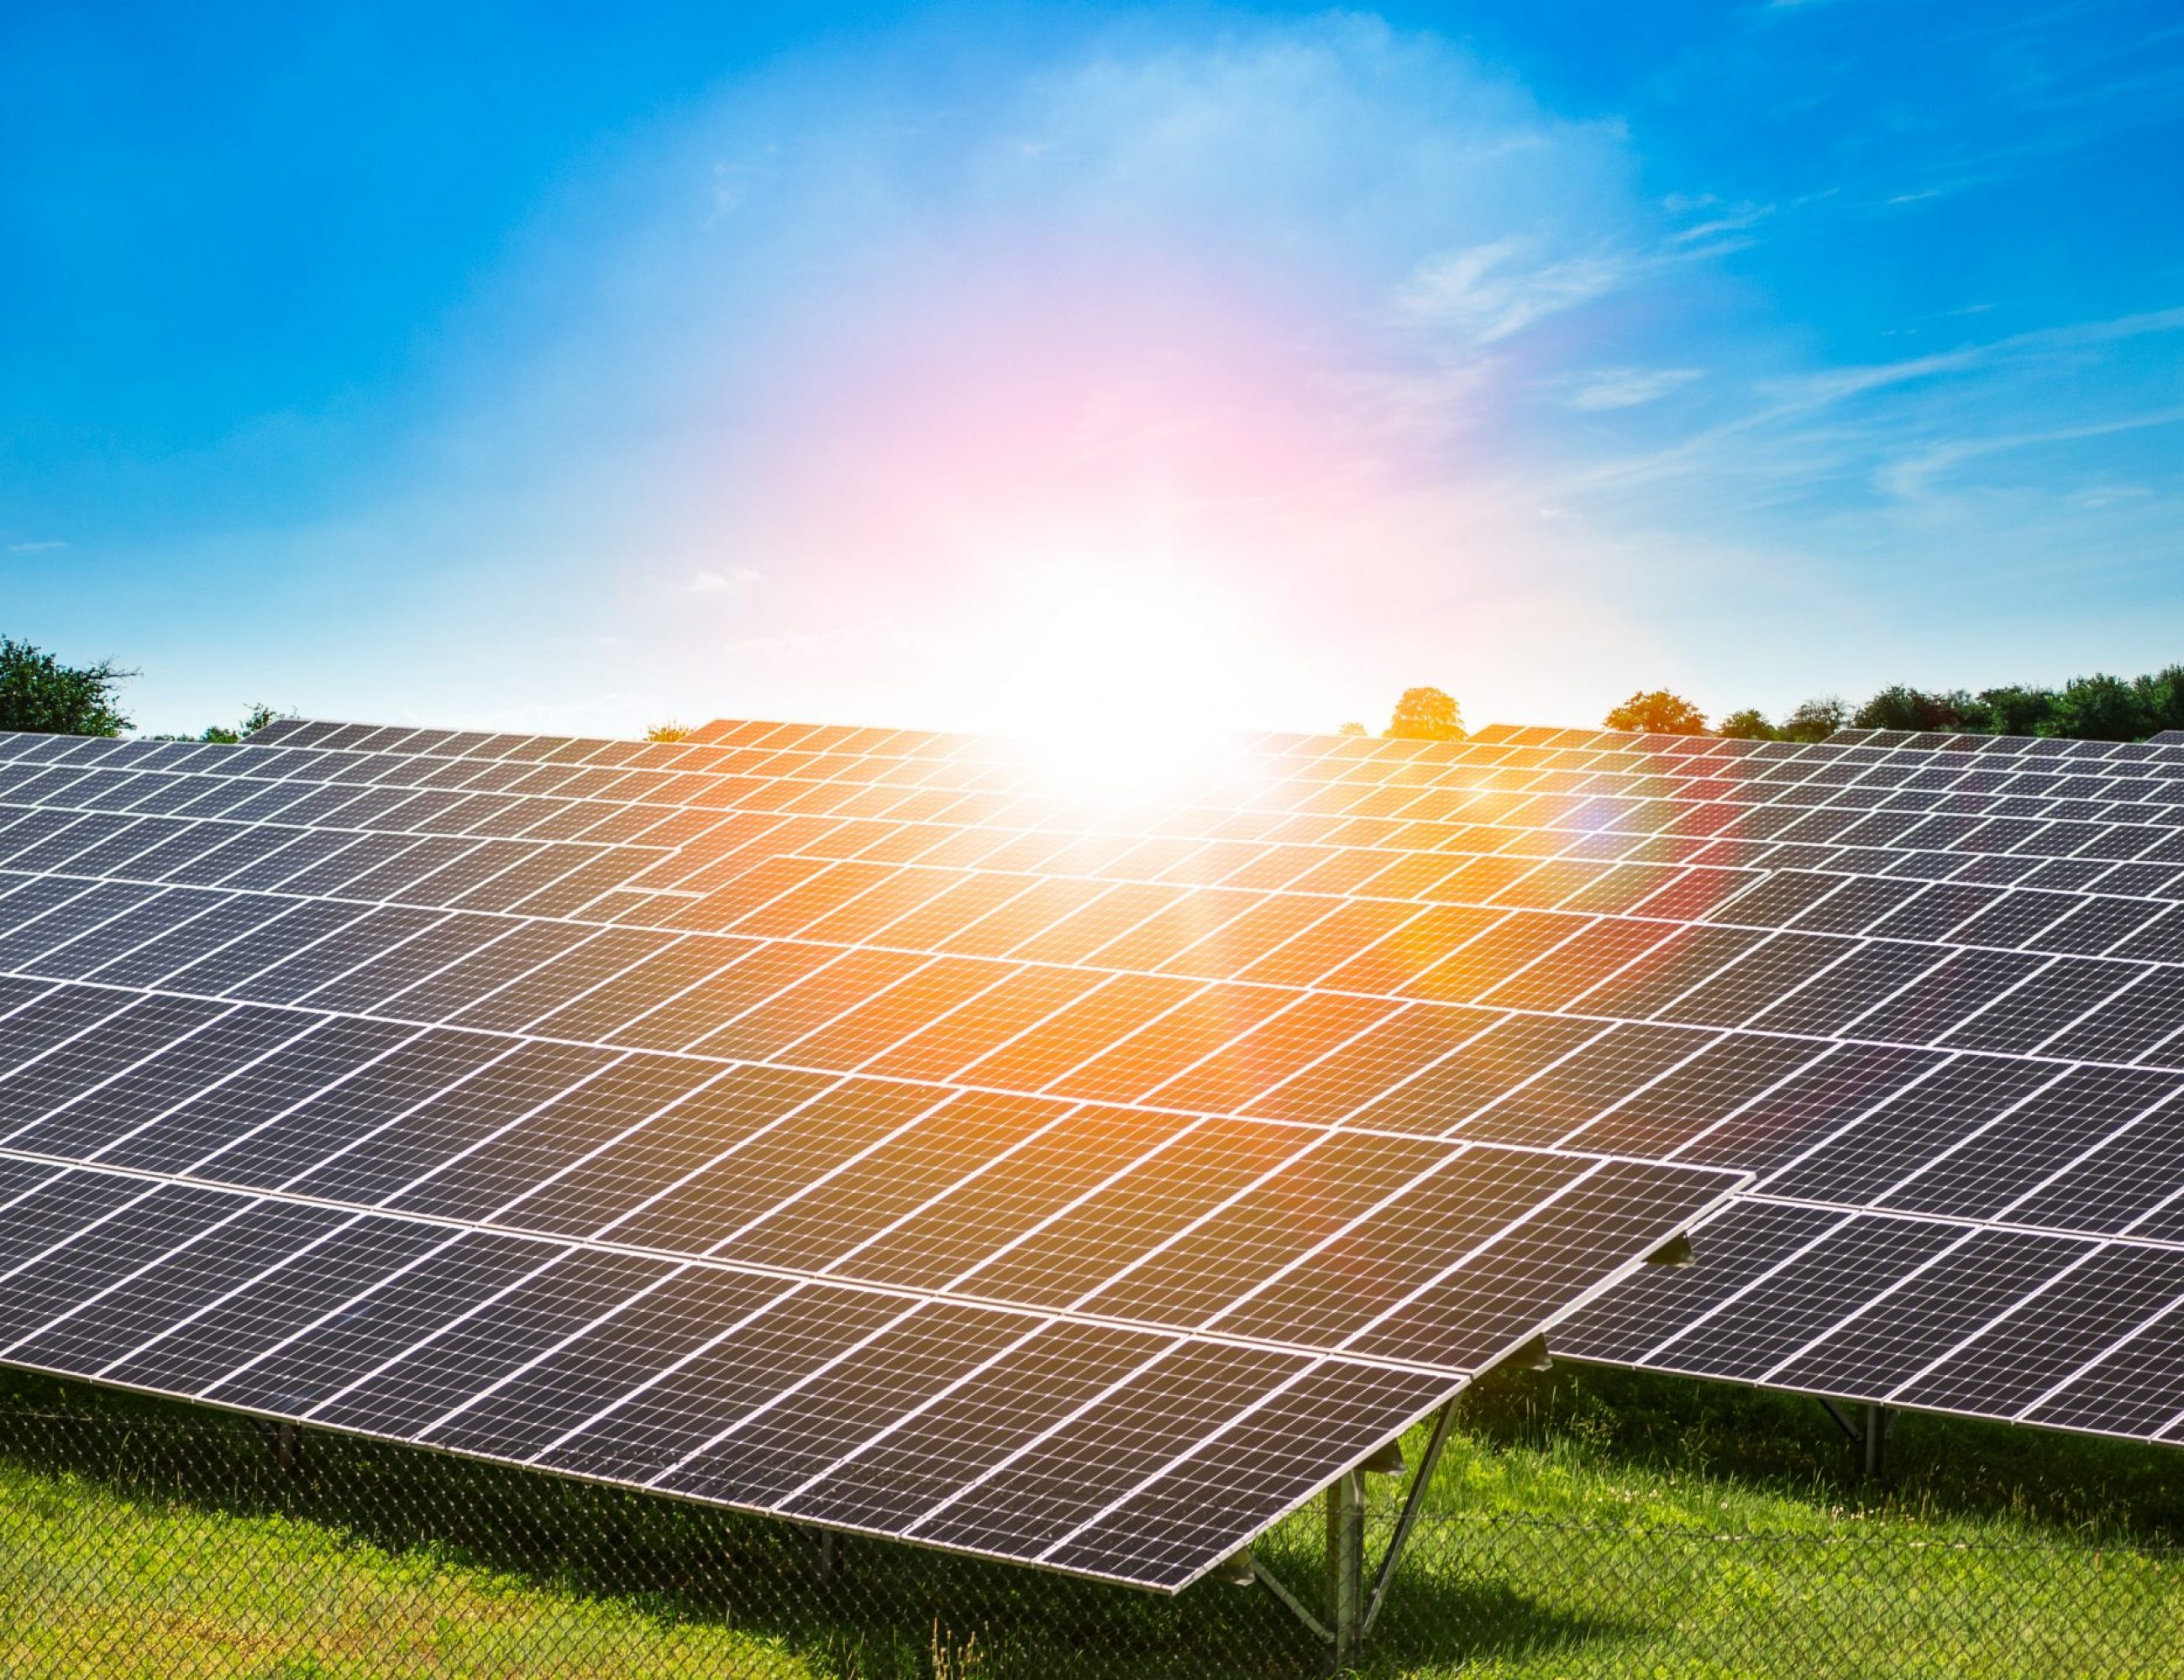 burst-of-sunlight-shining-on-solar-panels-renewab-2022-11-15-06-42-14-utc